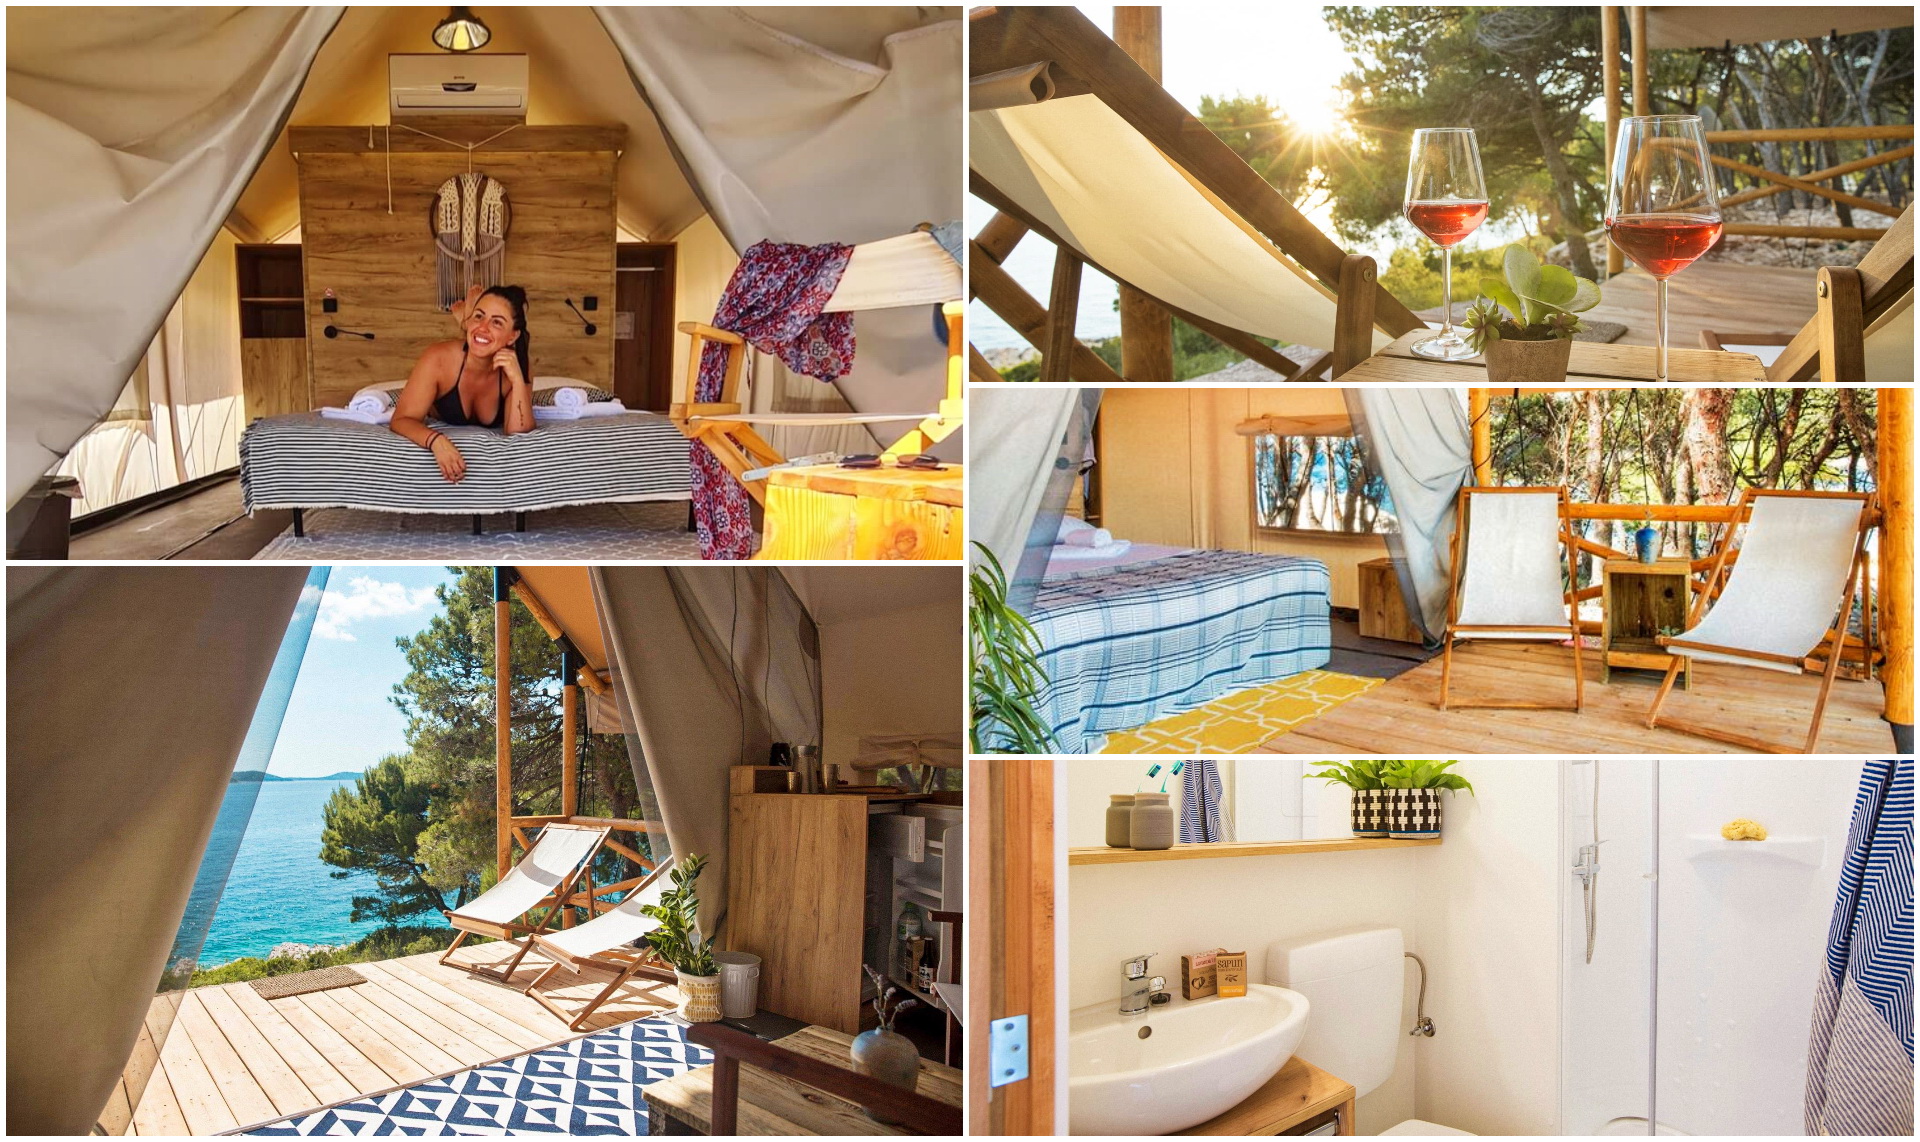 Obonjan glamping resort - Forest Lodge tent - Avtokampi.si